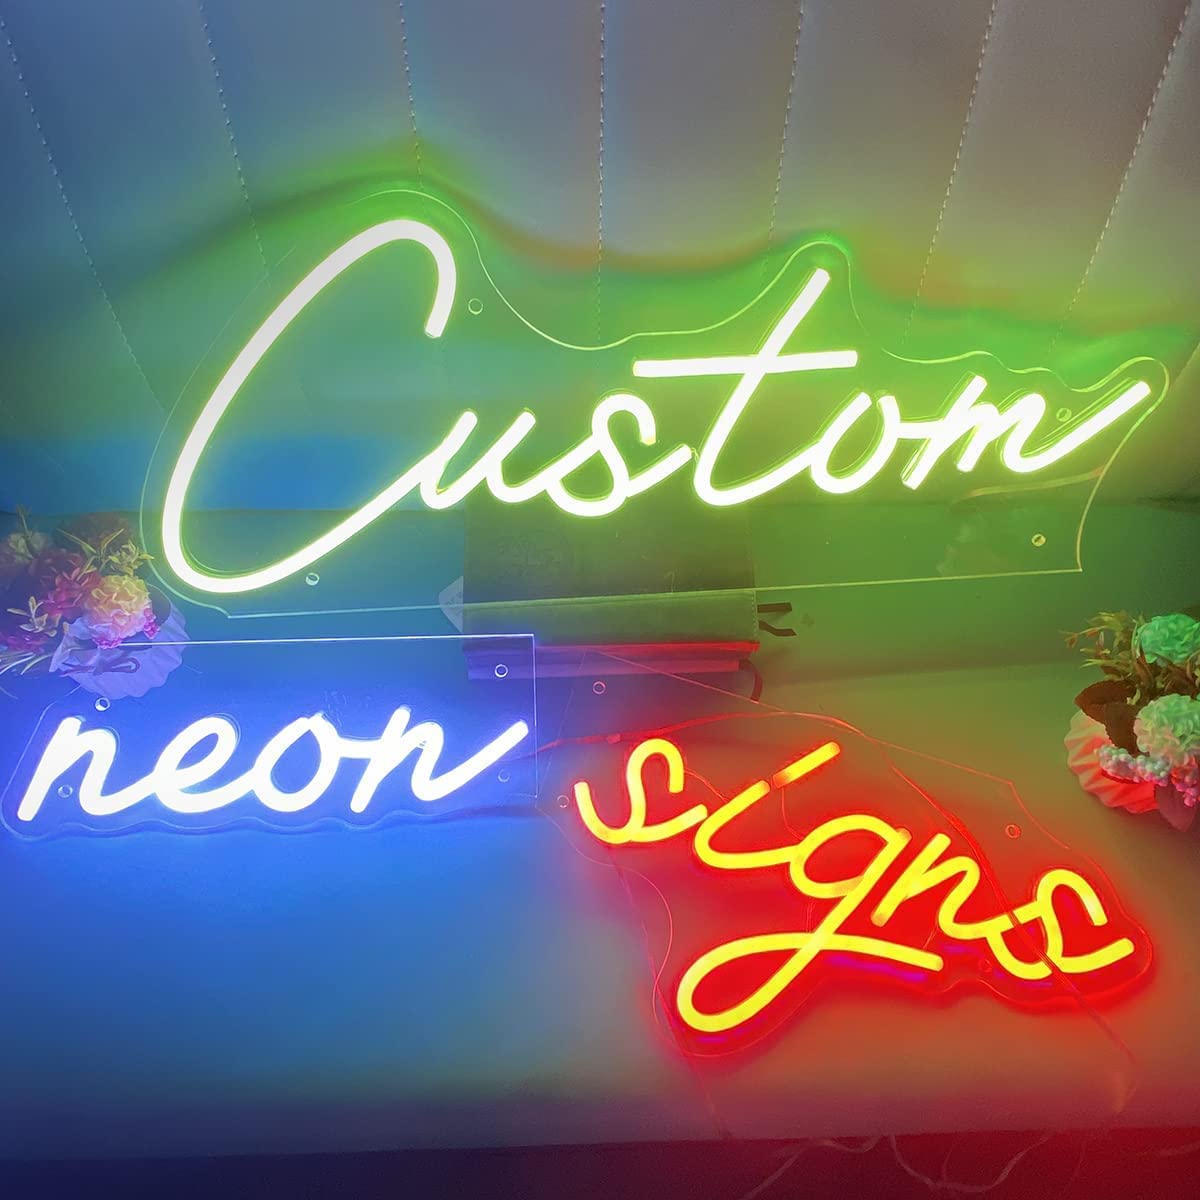 How to Design a Custom Business Logo